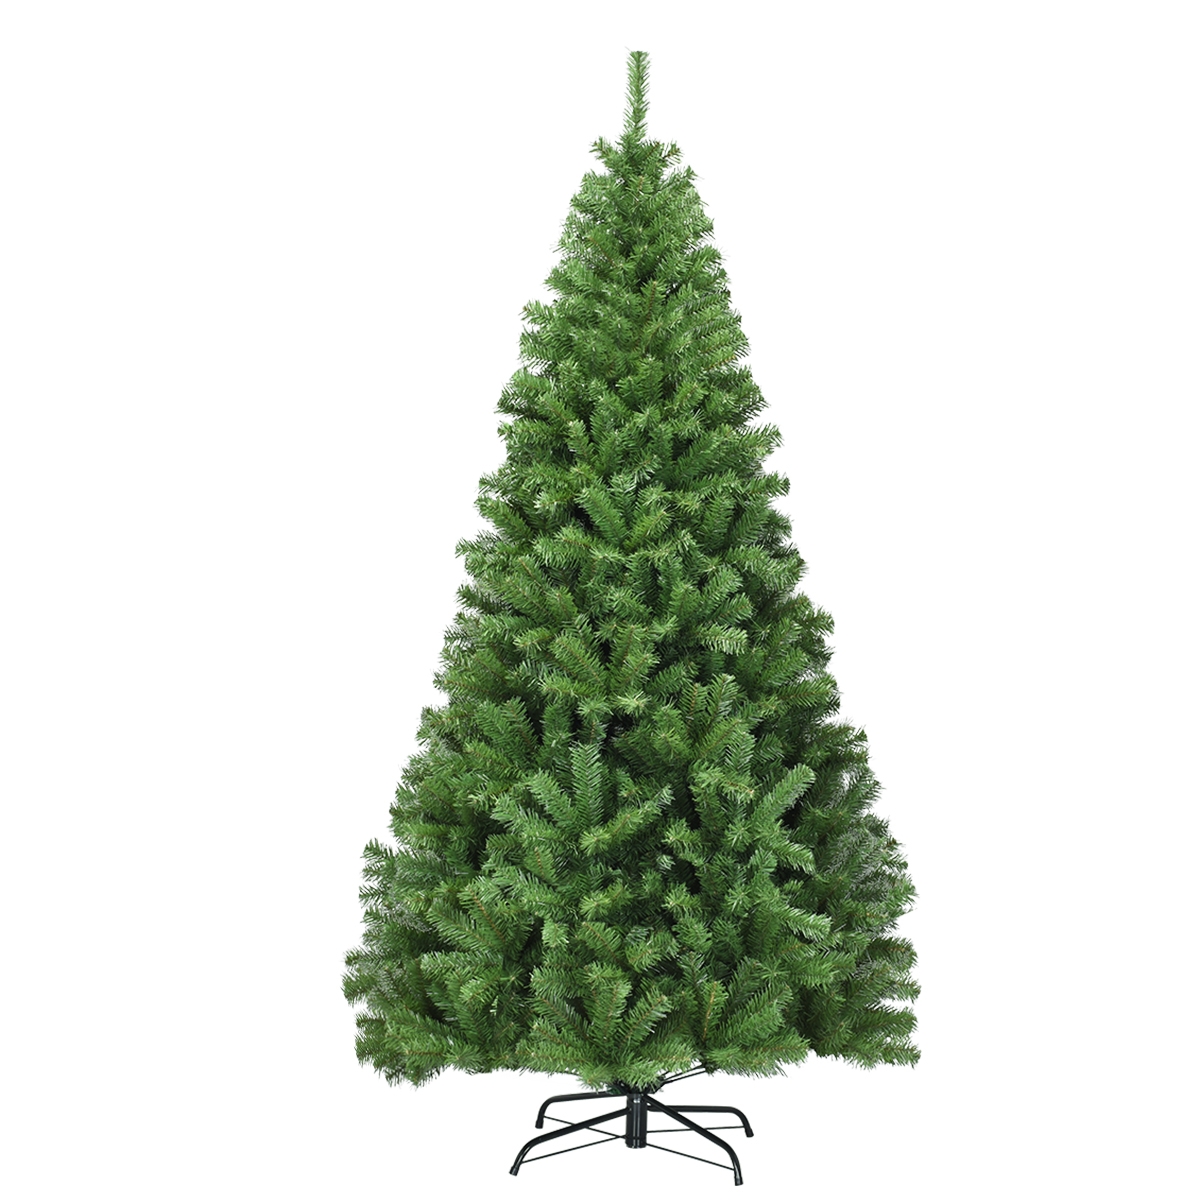 Costway 1,8m Árbol de Navidad con 1000 Ramas Bisagras y Base de Metal Resistente Ideal para Casa Oficina Tiendas Hoteles